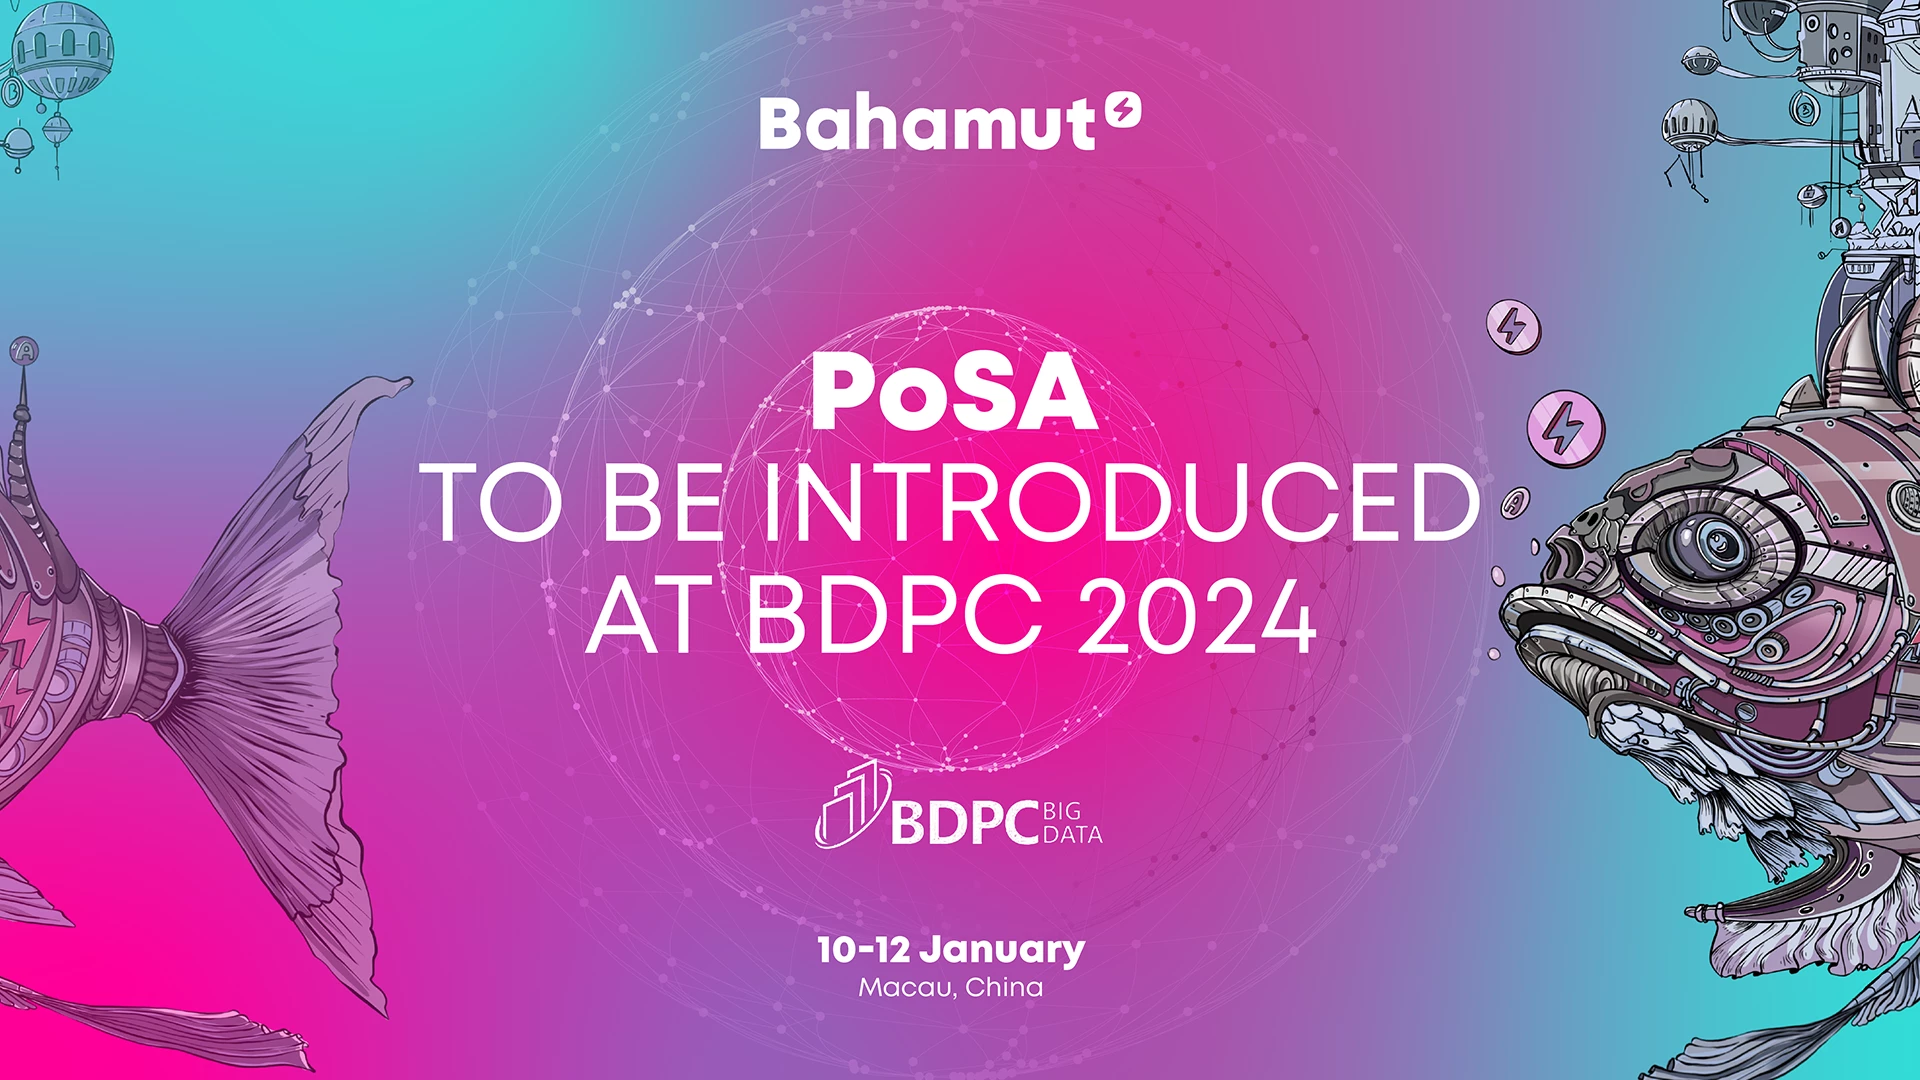 Bahamut PoSA, BDPC 2024'te Öne Çıkacak